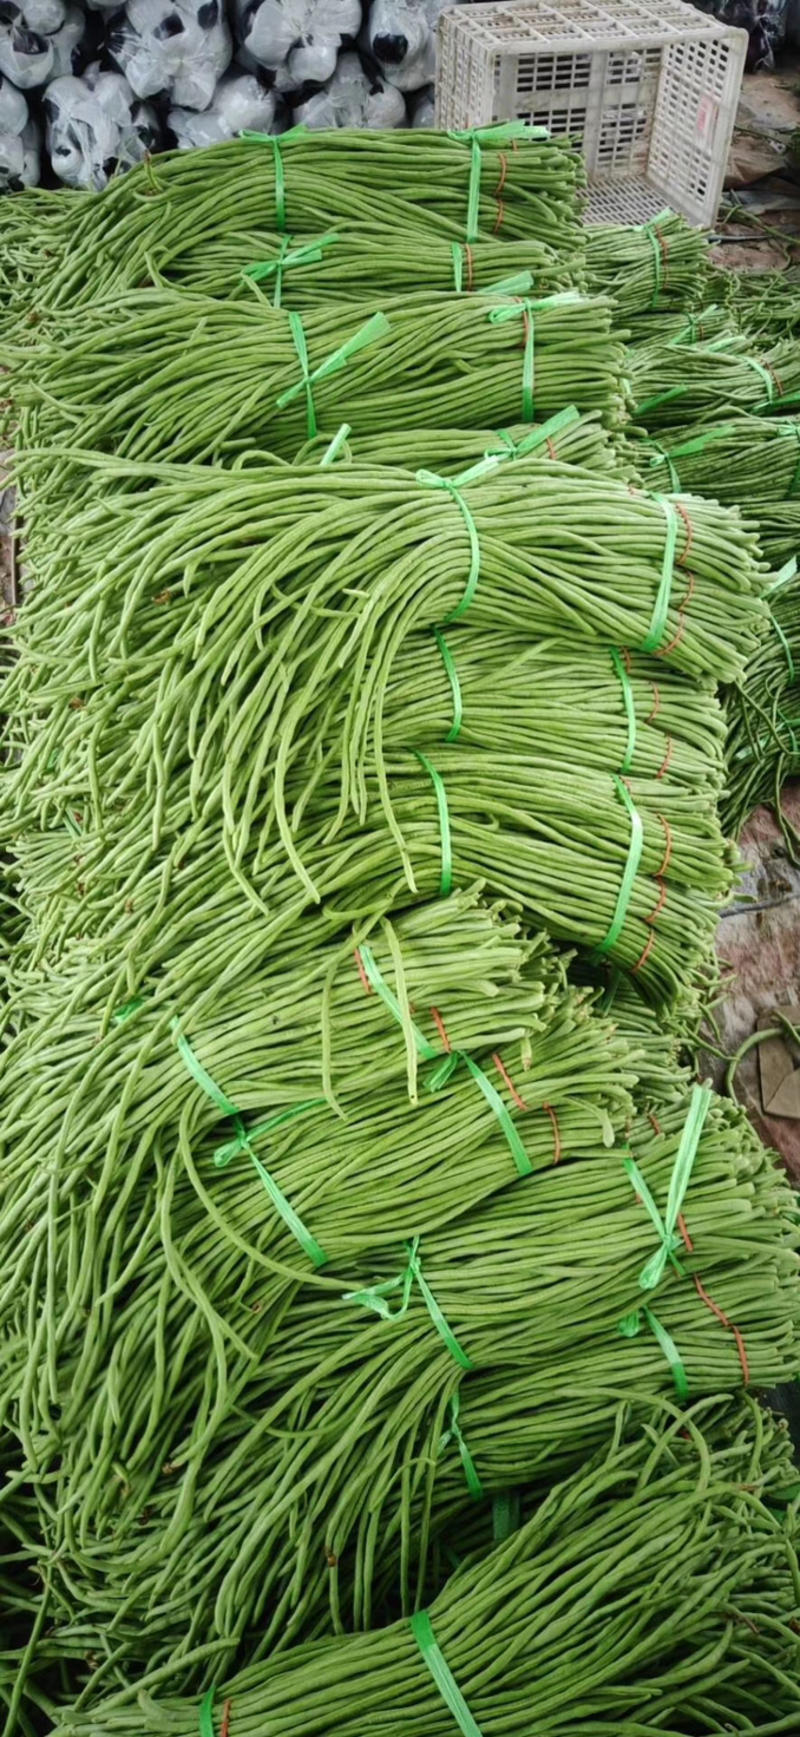 [荐]长豆角60厘米以上蒋村蔬菜市场大量供应